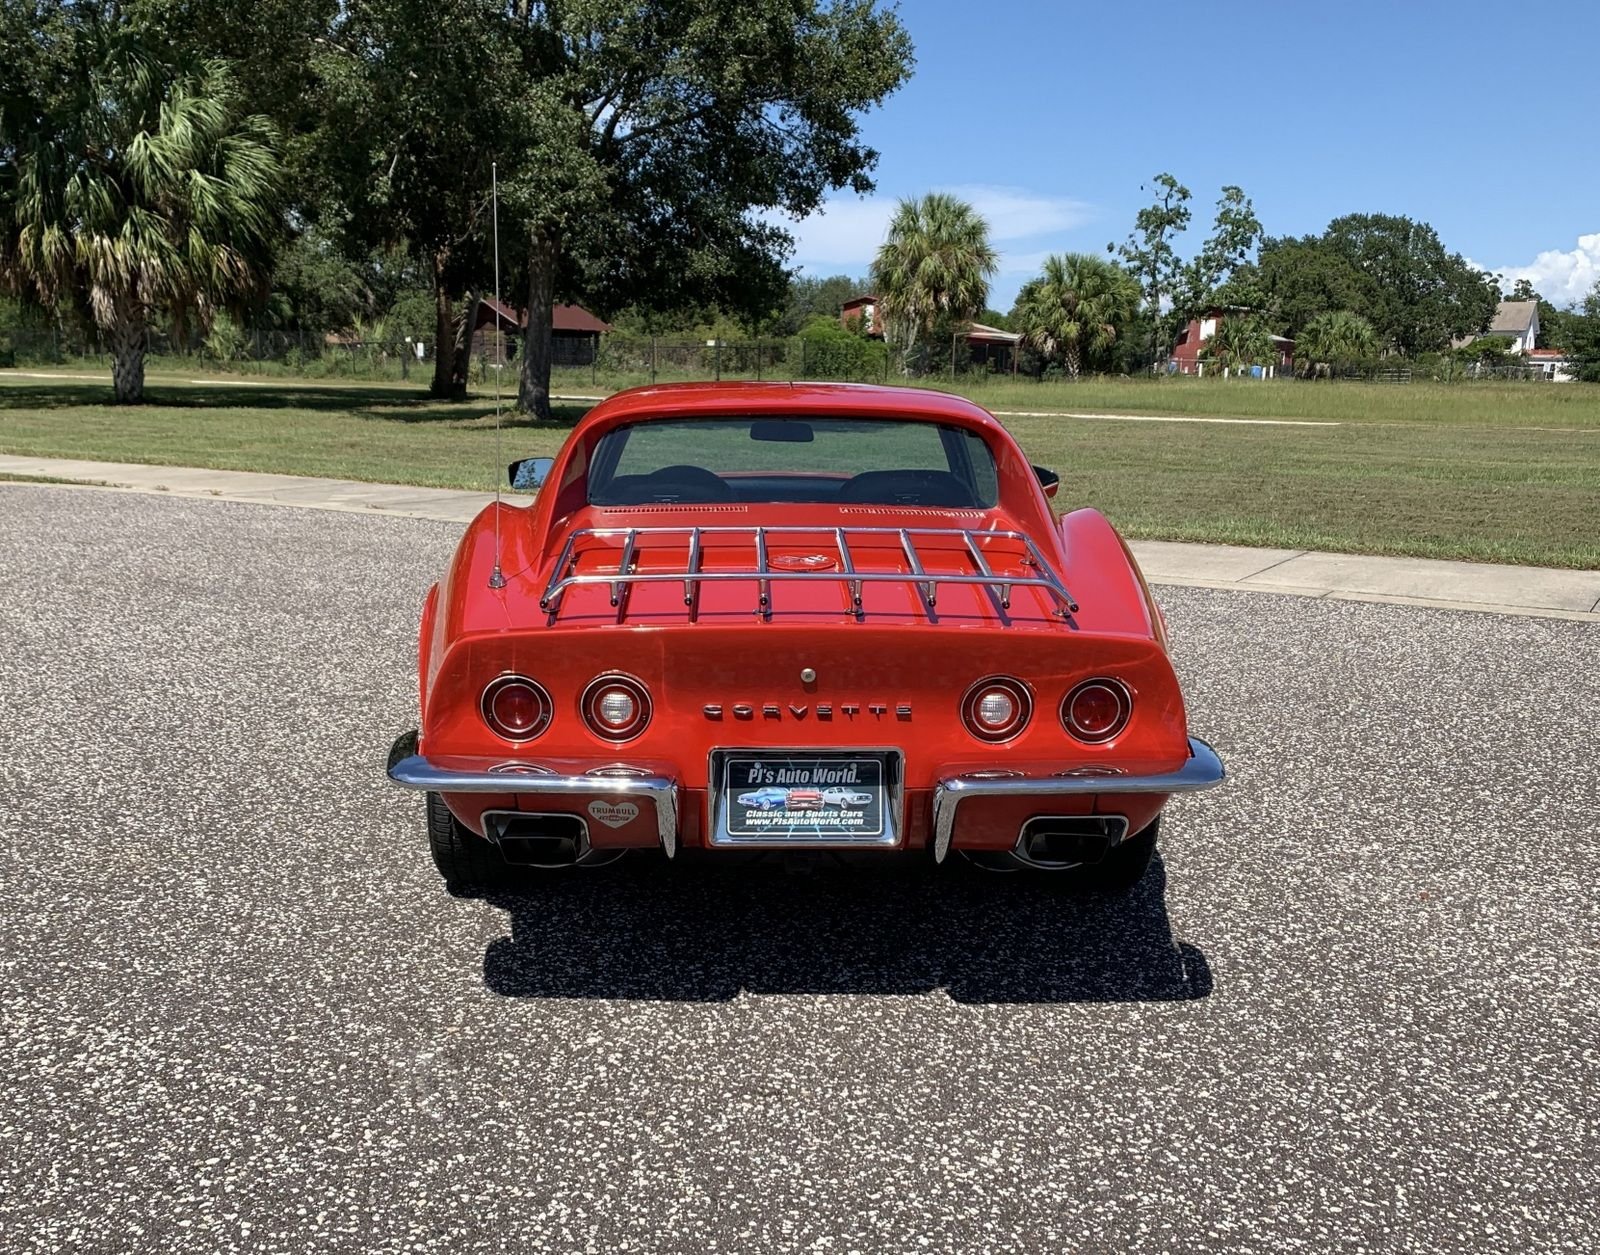 For Sale 1973 Chevrolet Corvette